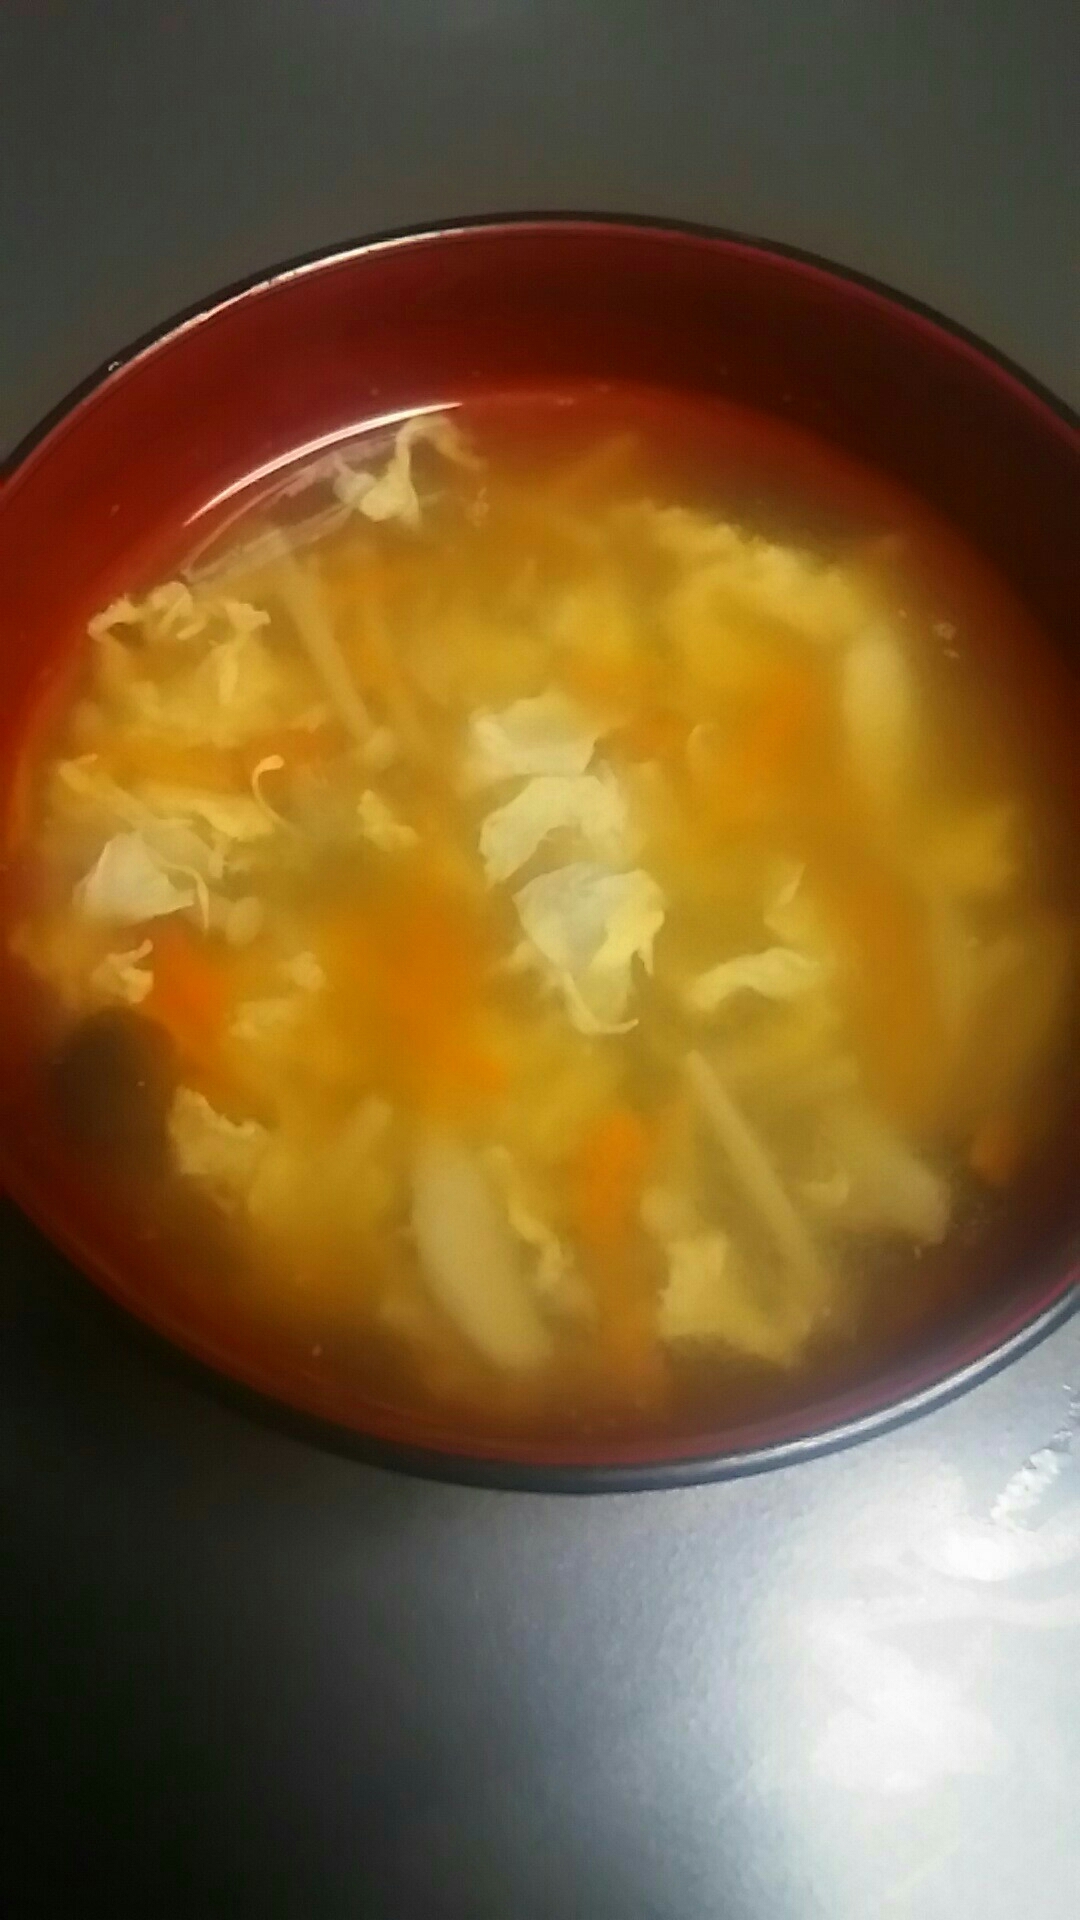 きのこと卵の中華スープ